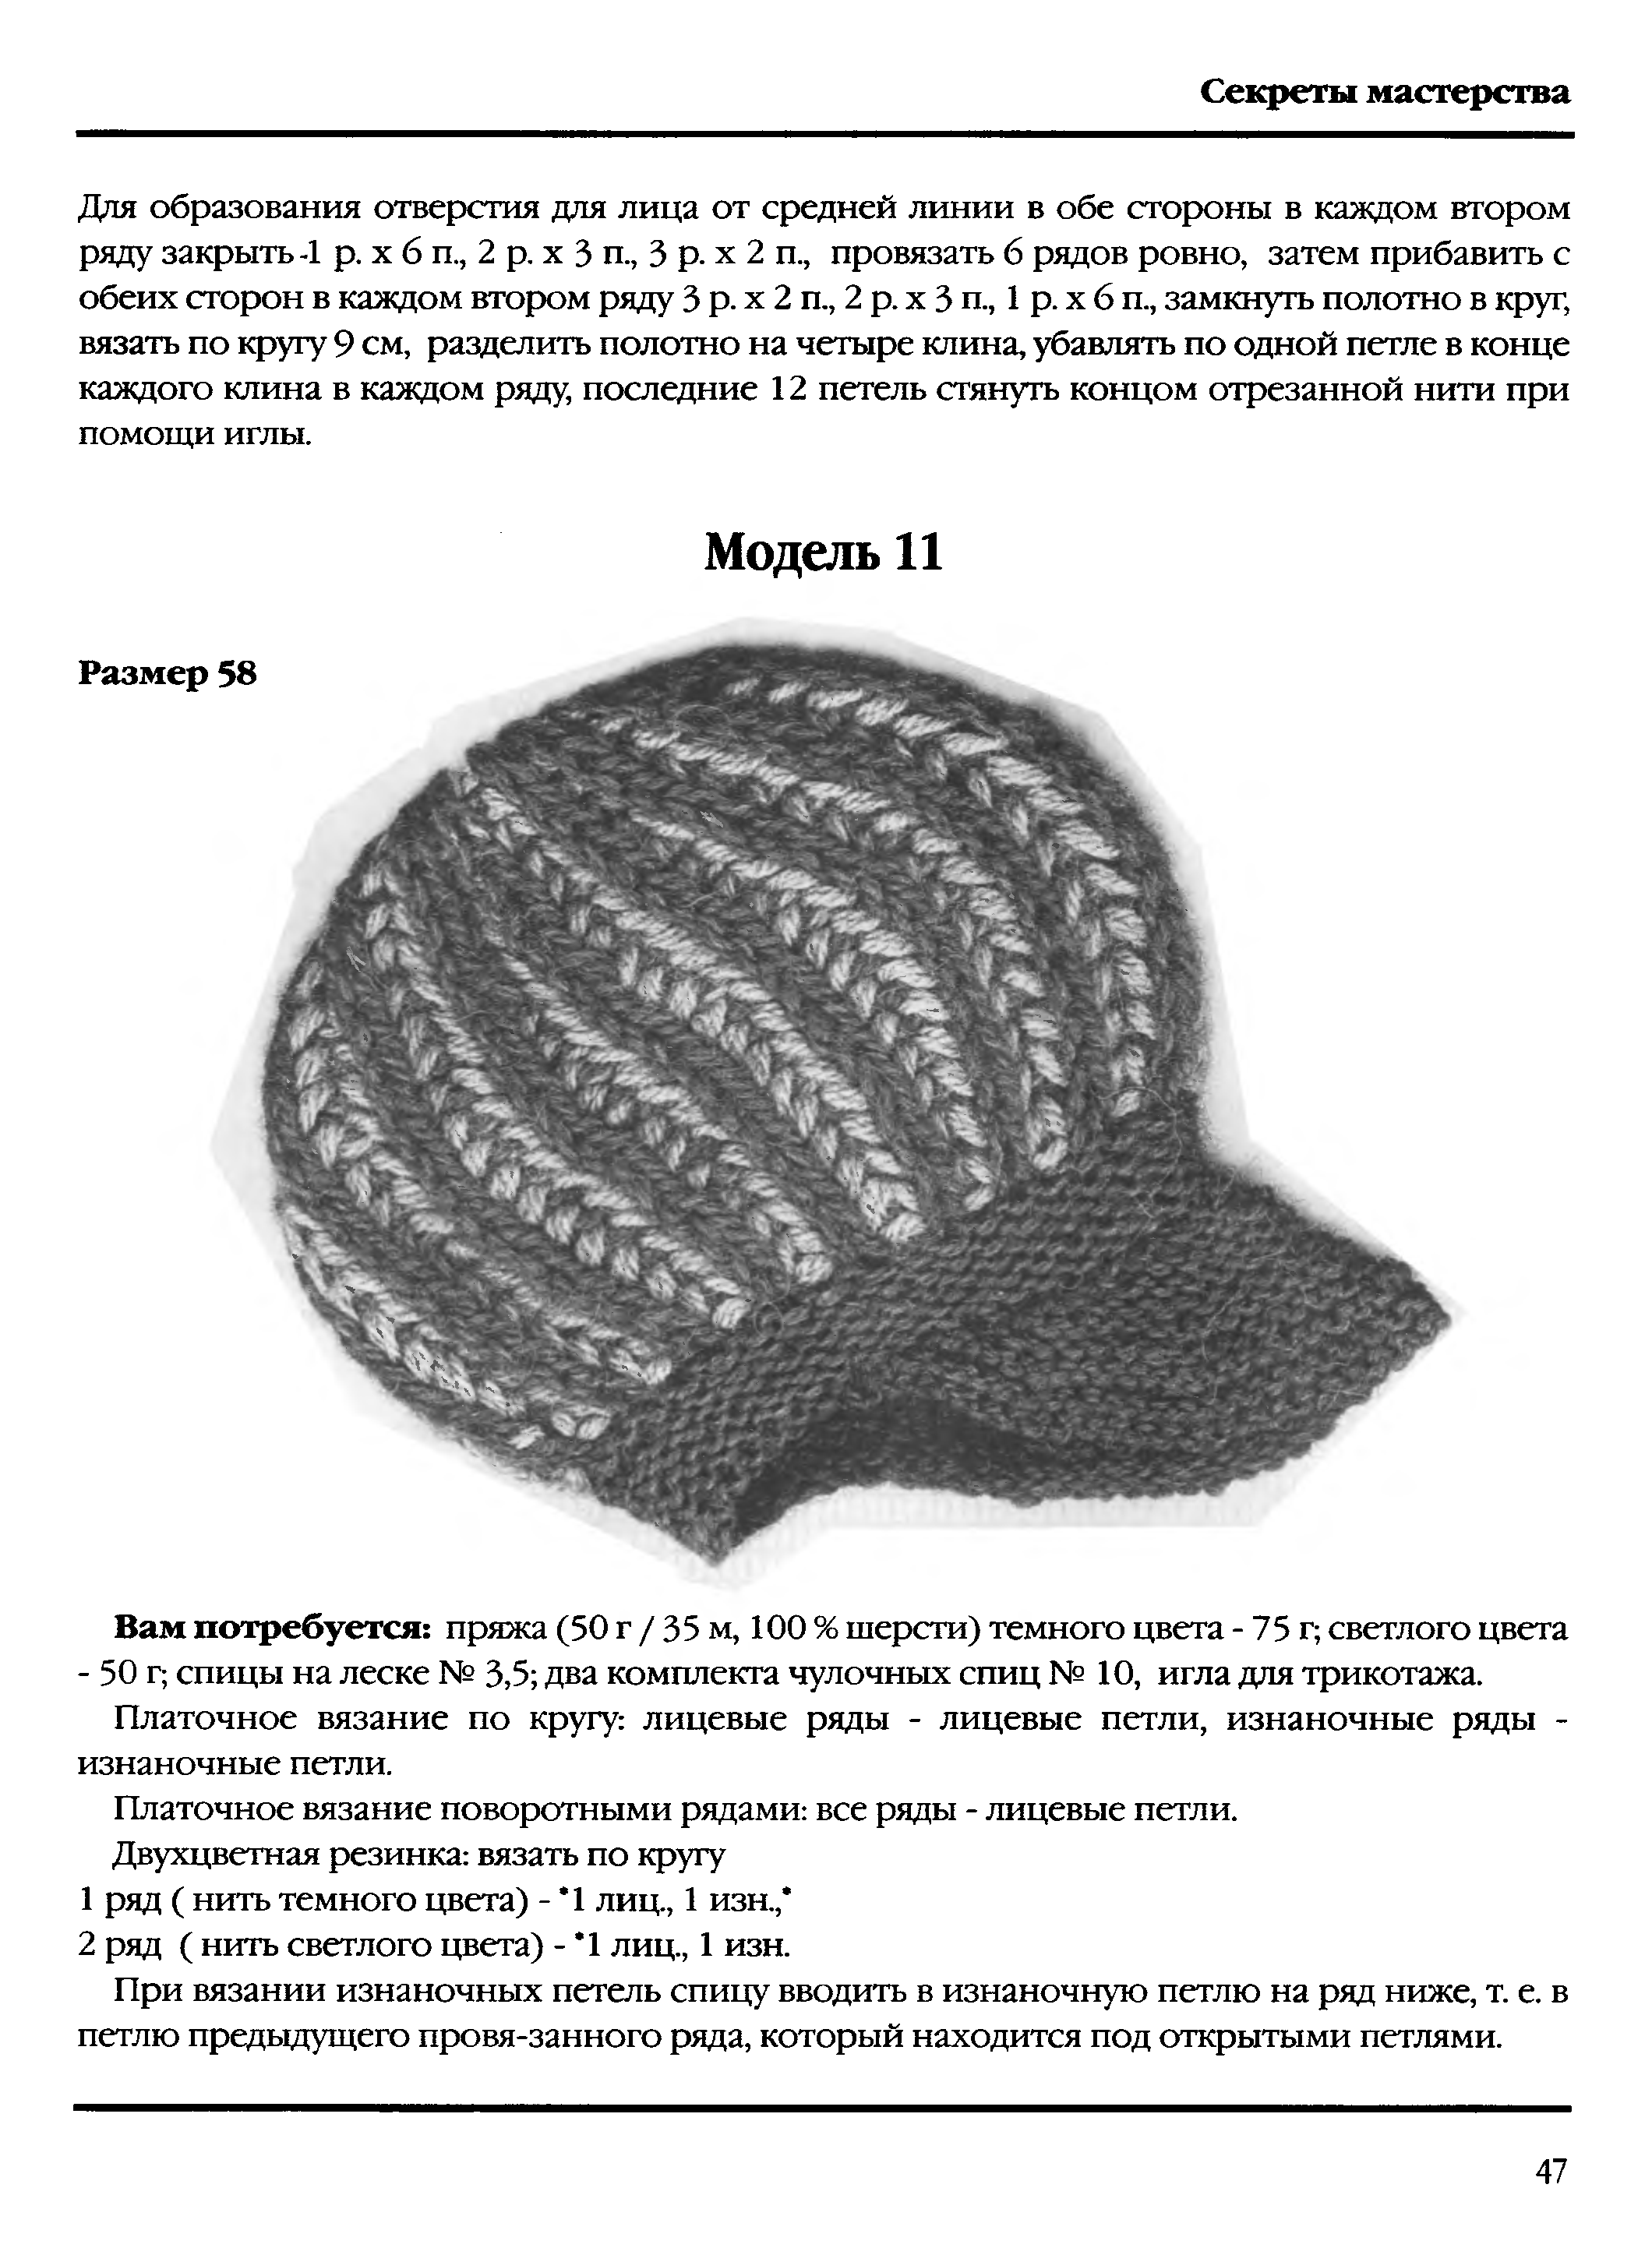 Вязание шапок спицами для женщин с описанием и схемами бесплатно